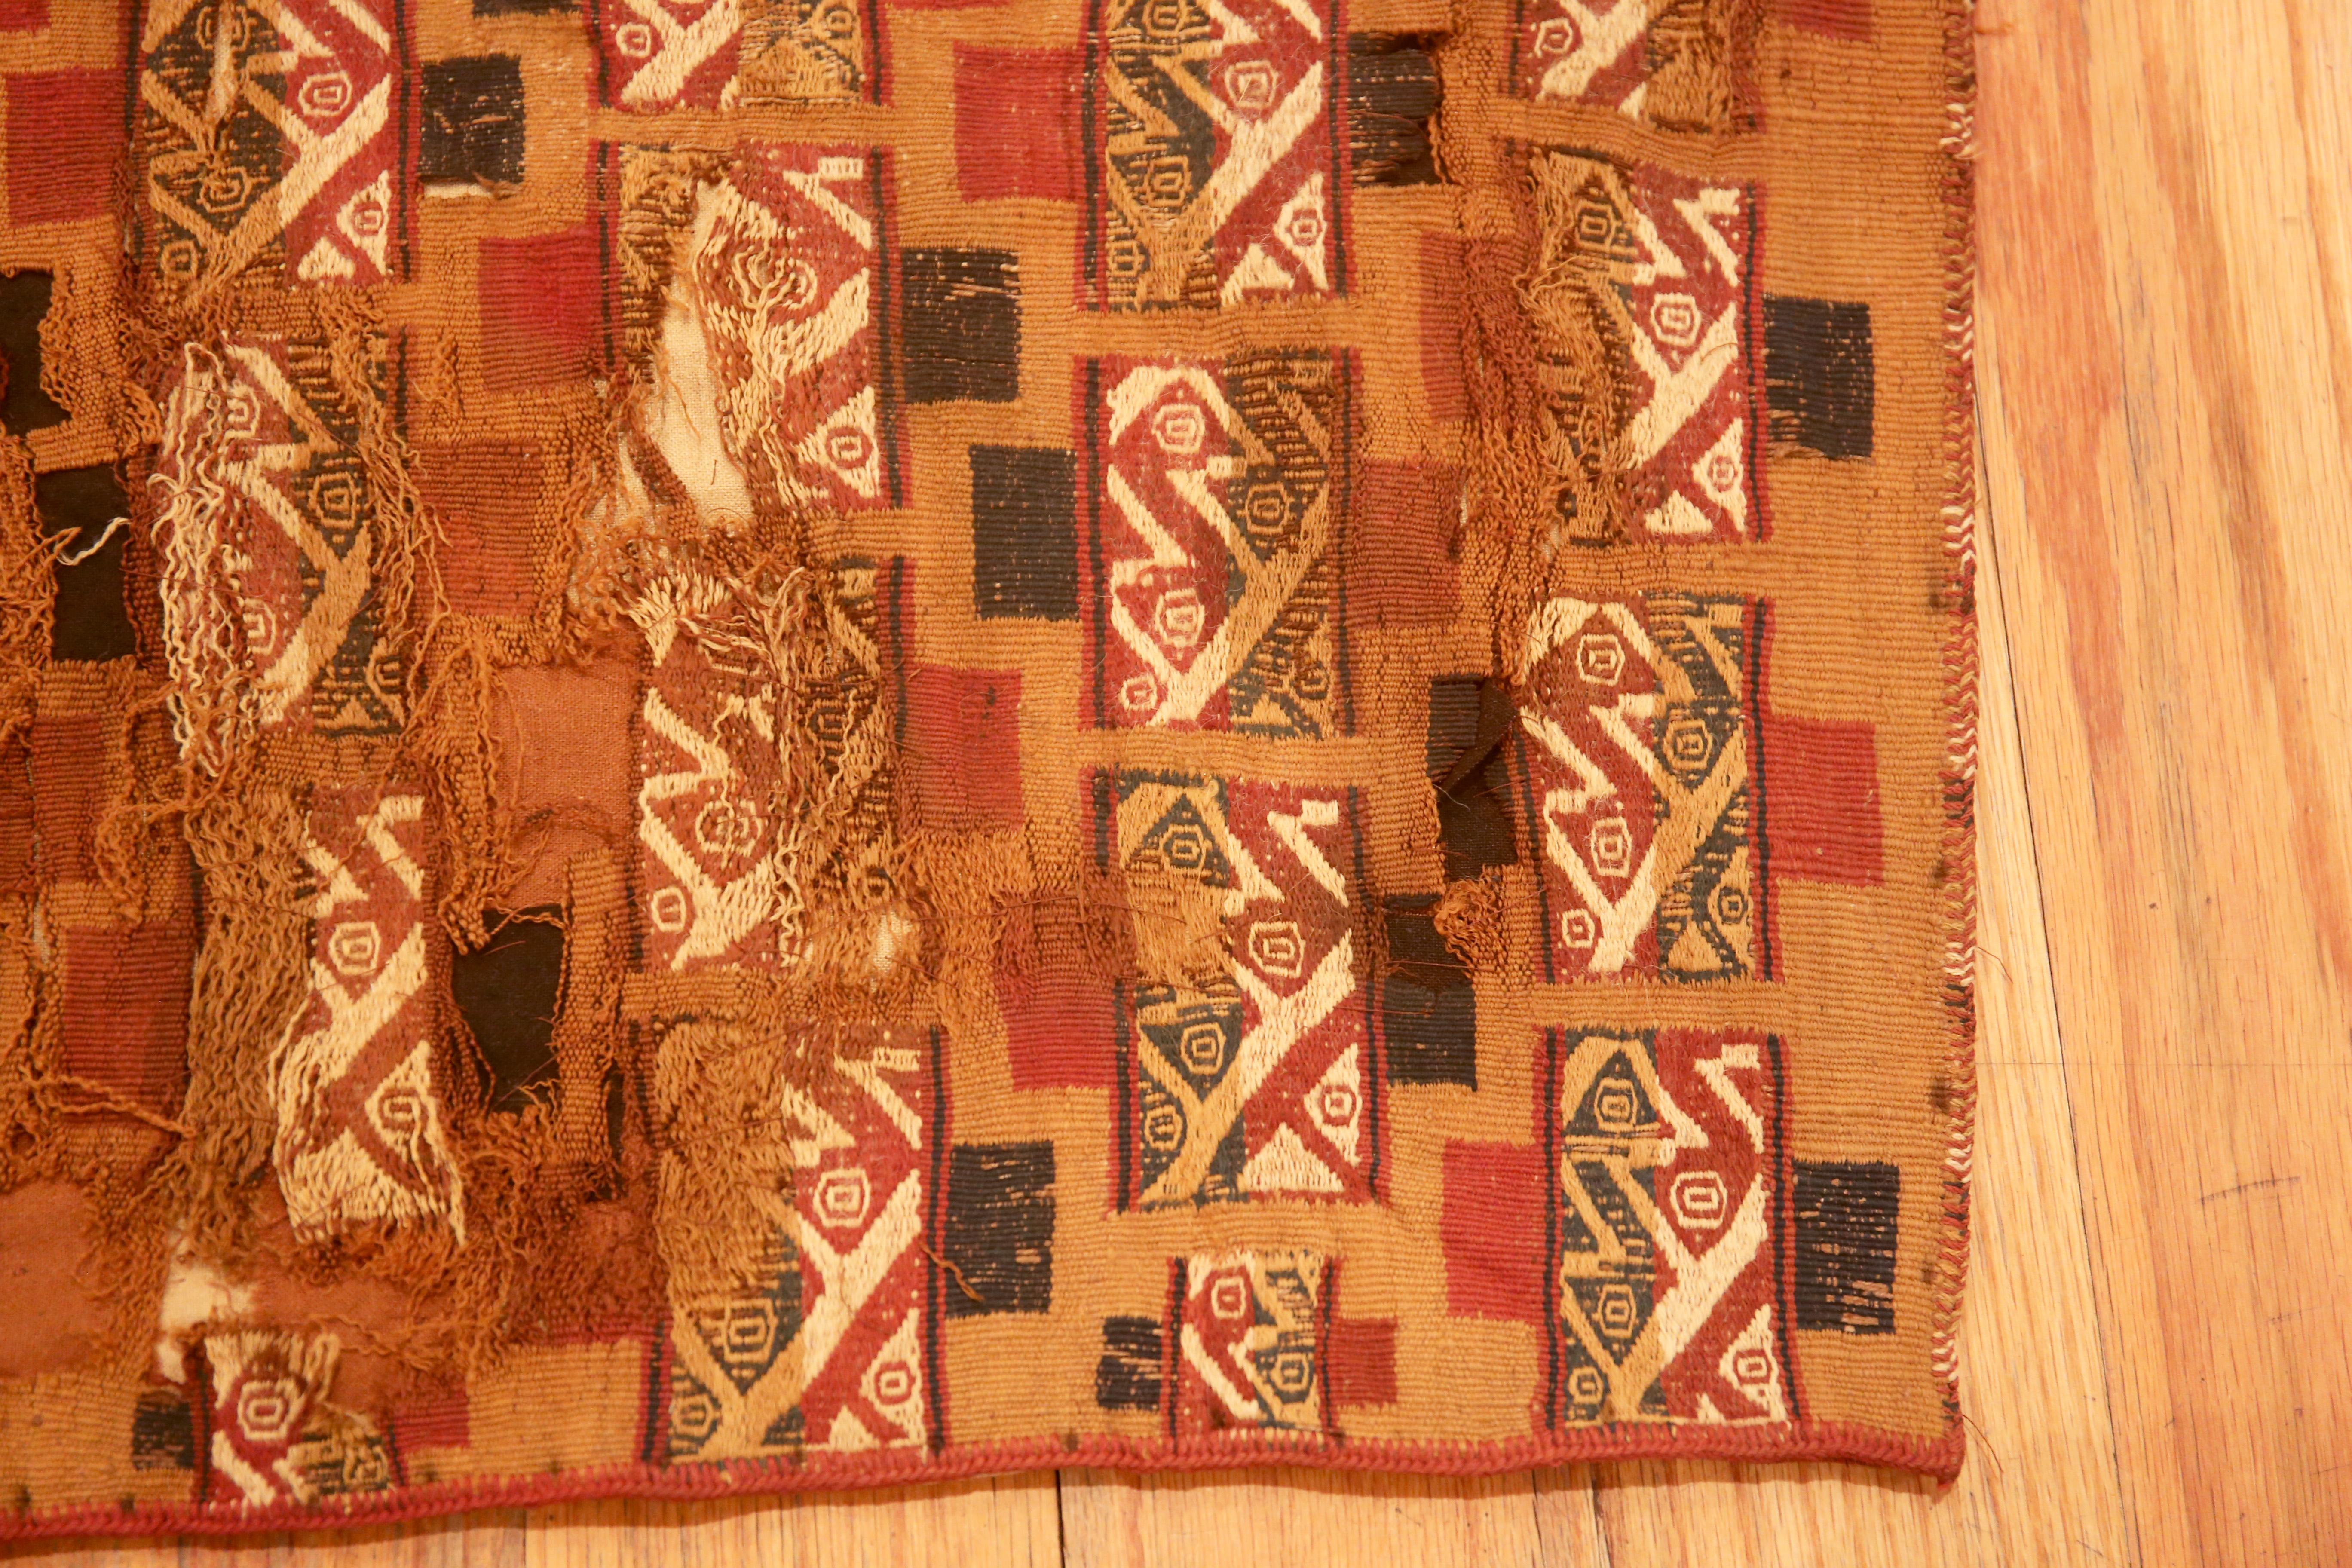 Incroyable textile péruvien du début du 16e siècle 1'2